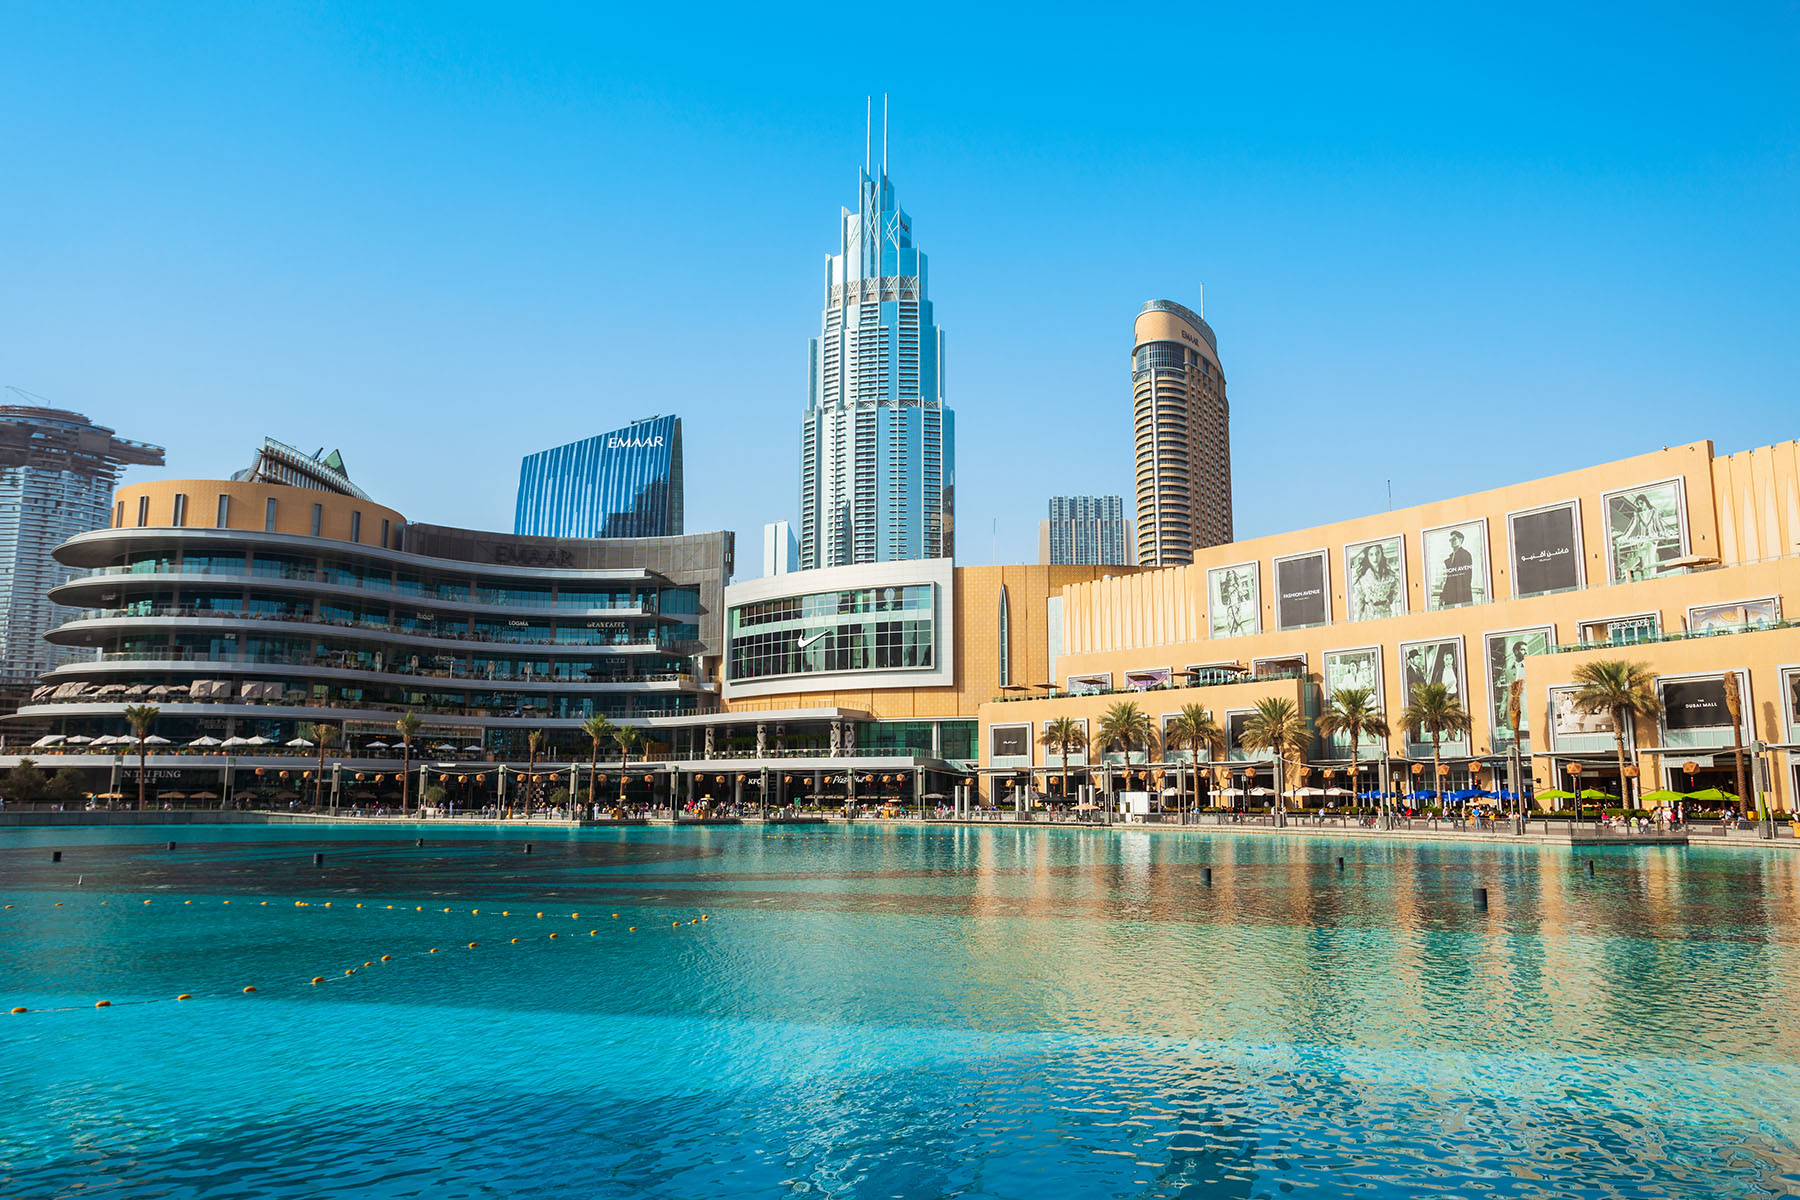 The Dubai Mall shopping center